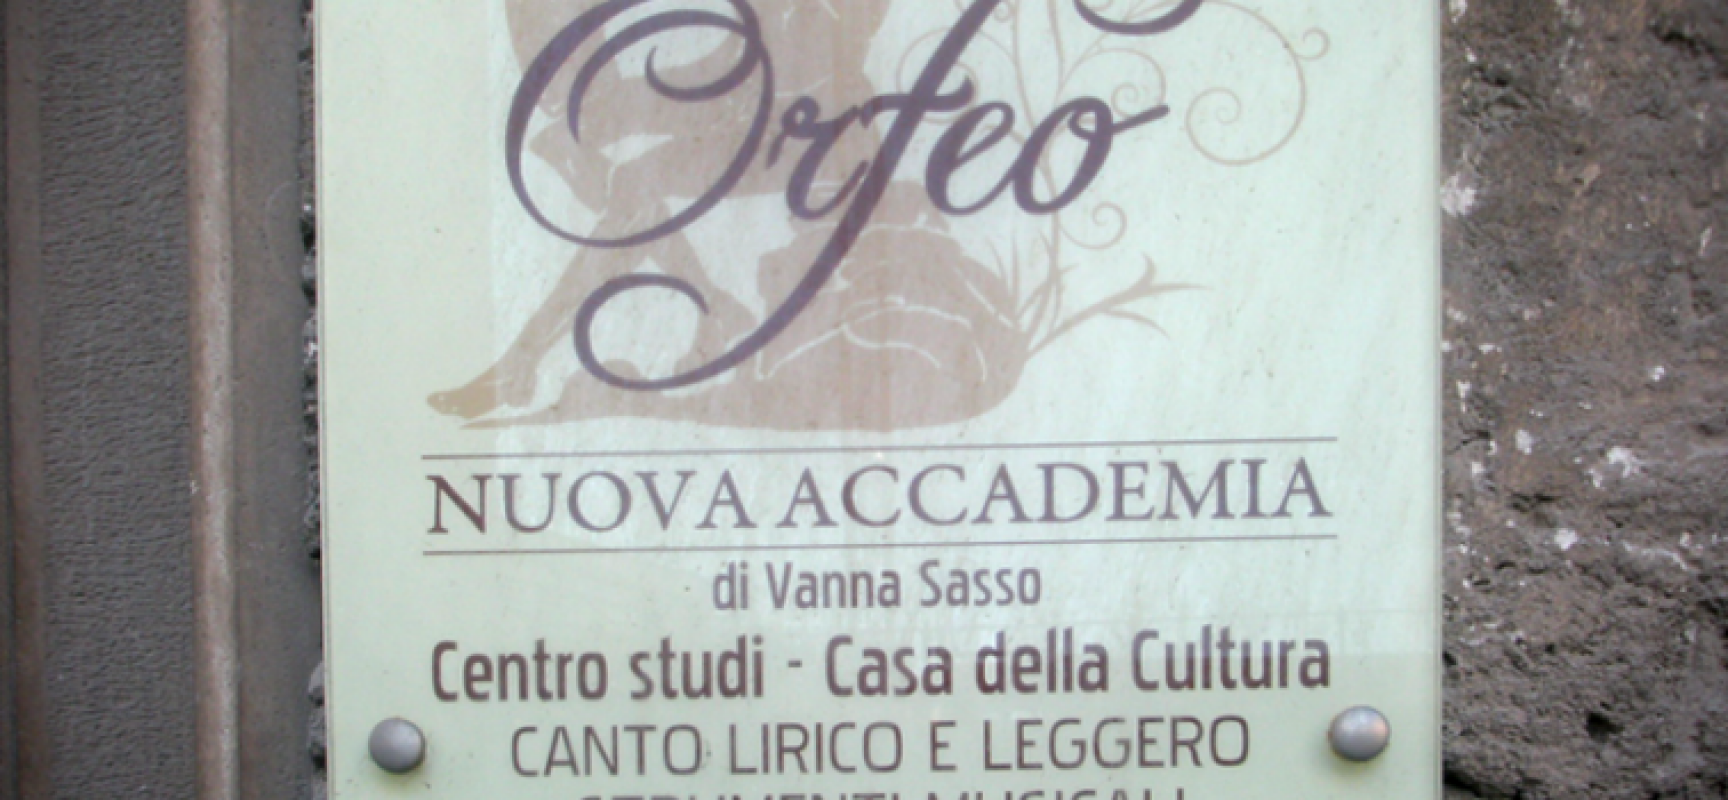 Nuova Accademia Orfeo, due eventi nella Zona Pedonale di via Nazario Sauro